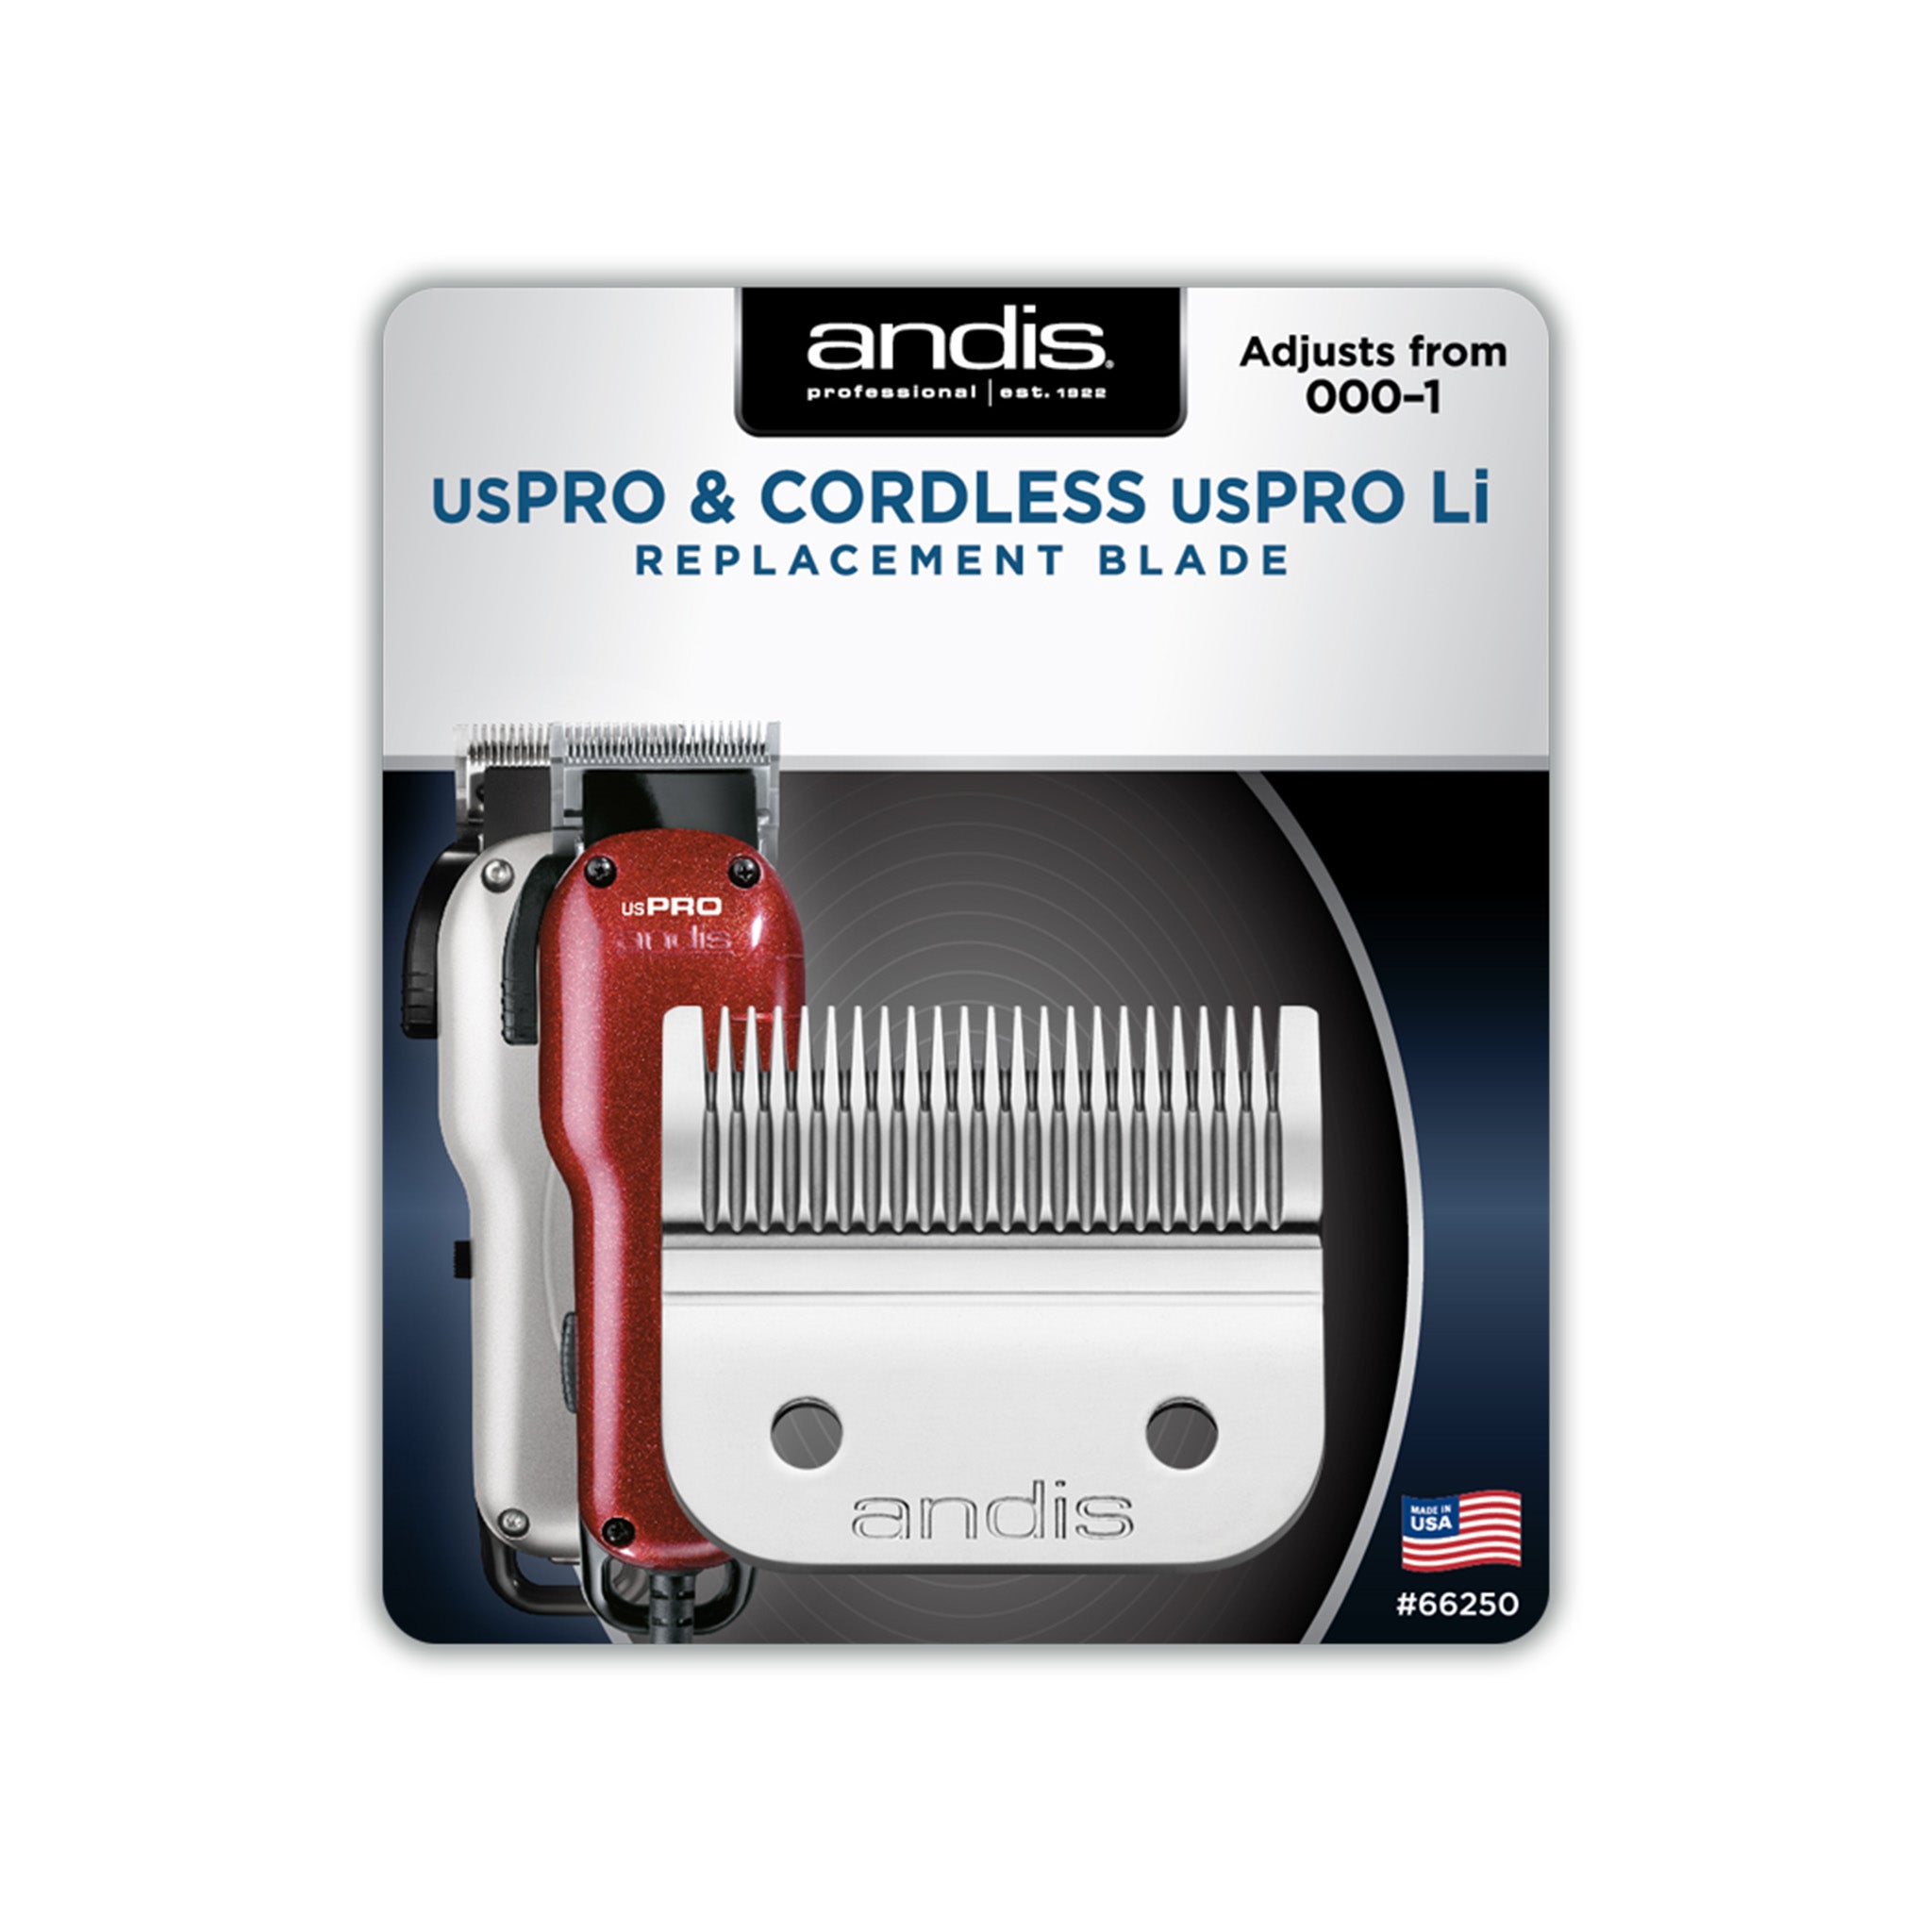 Andis USPro & Cordless USPro Li Replacement Blade